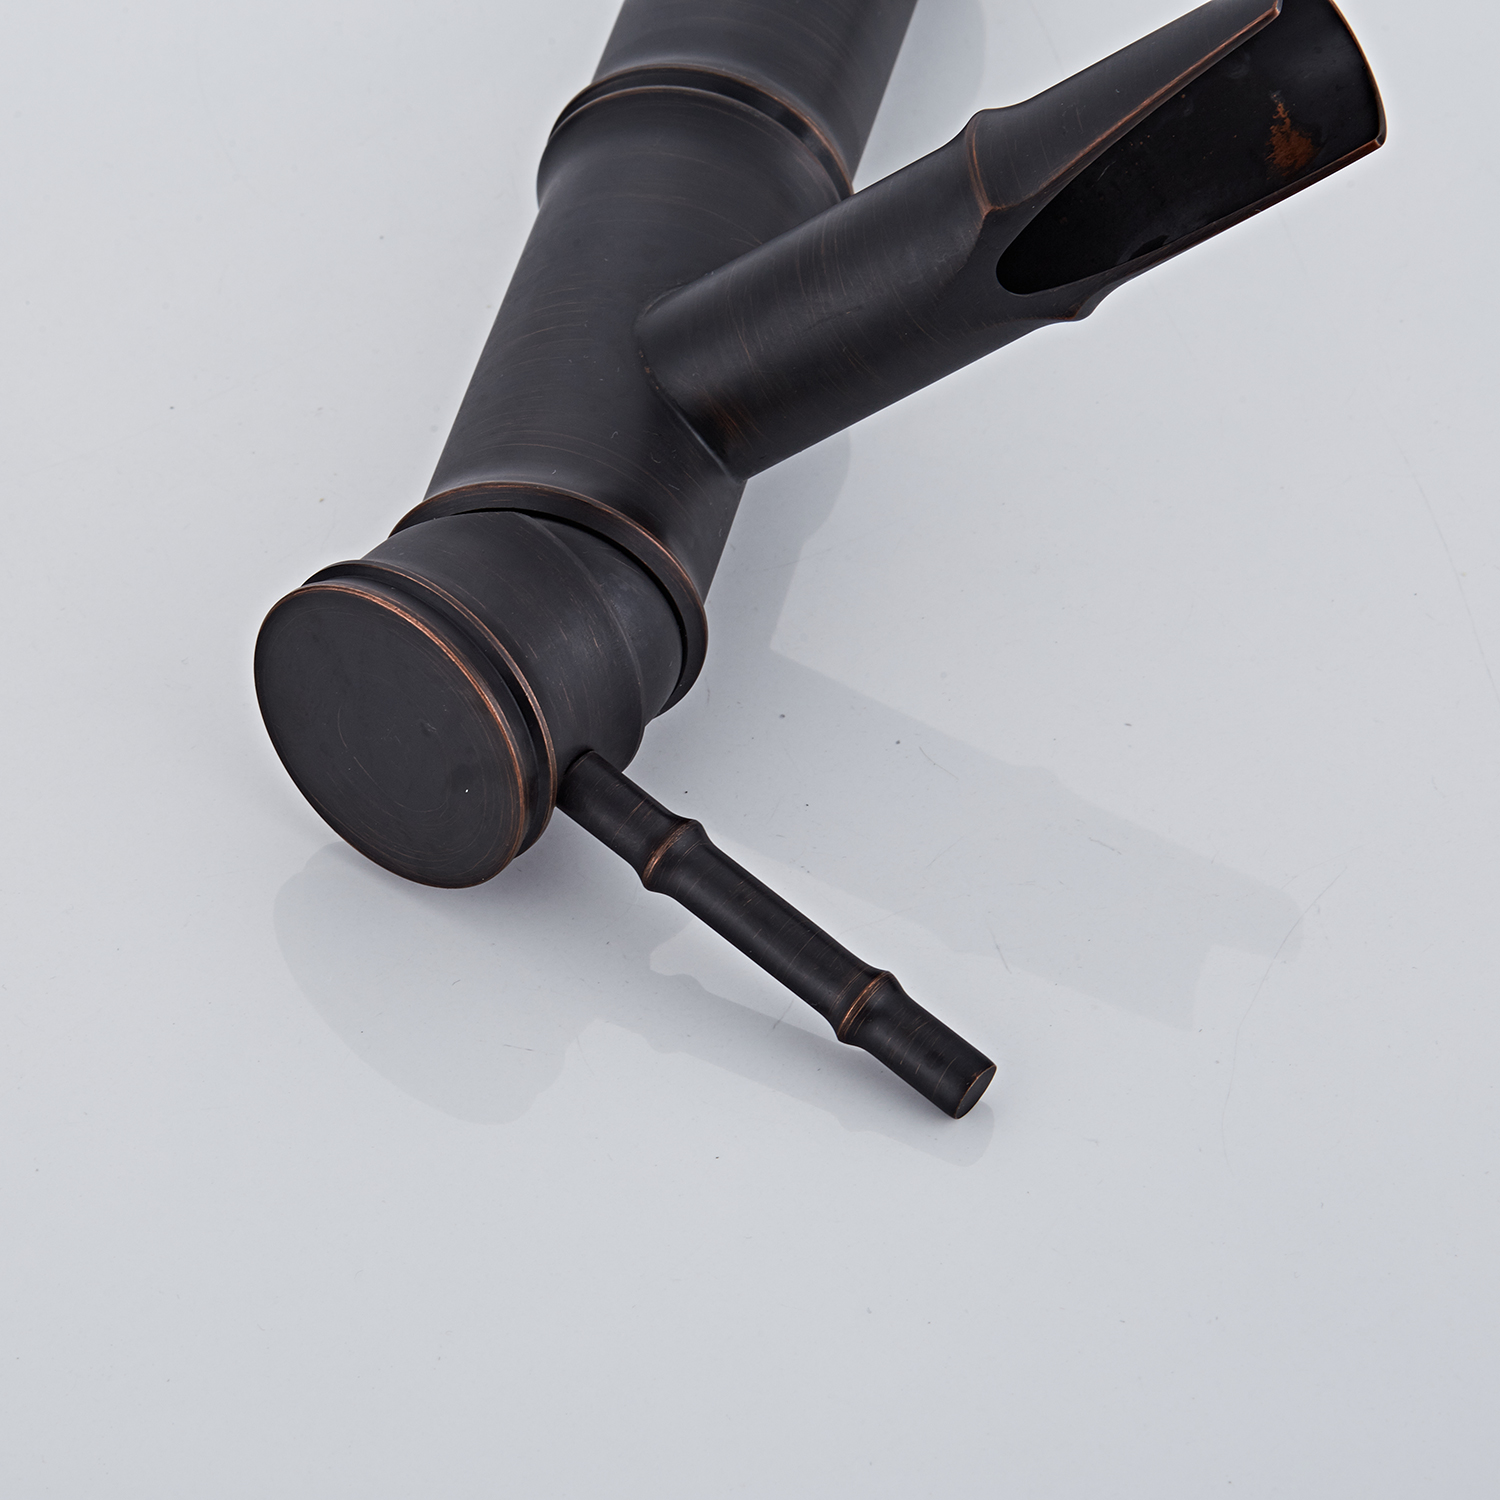 बांबूचा आकार काळा आधुनिक मिनिमलिस्ट कौटुंबिक शैलीतील वायुमंडलीय बेसिन नल (2)